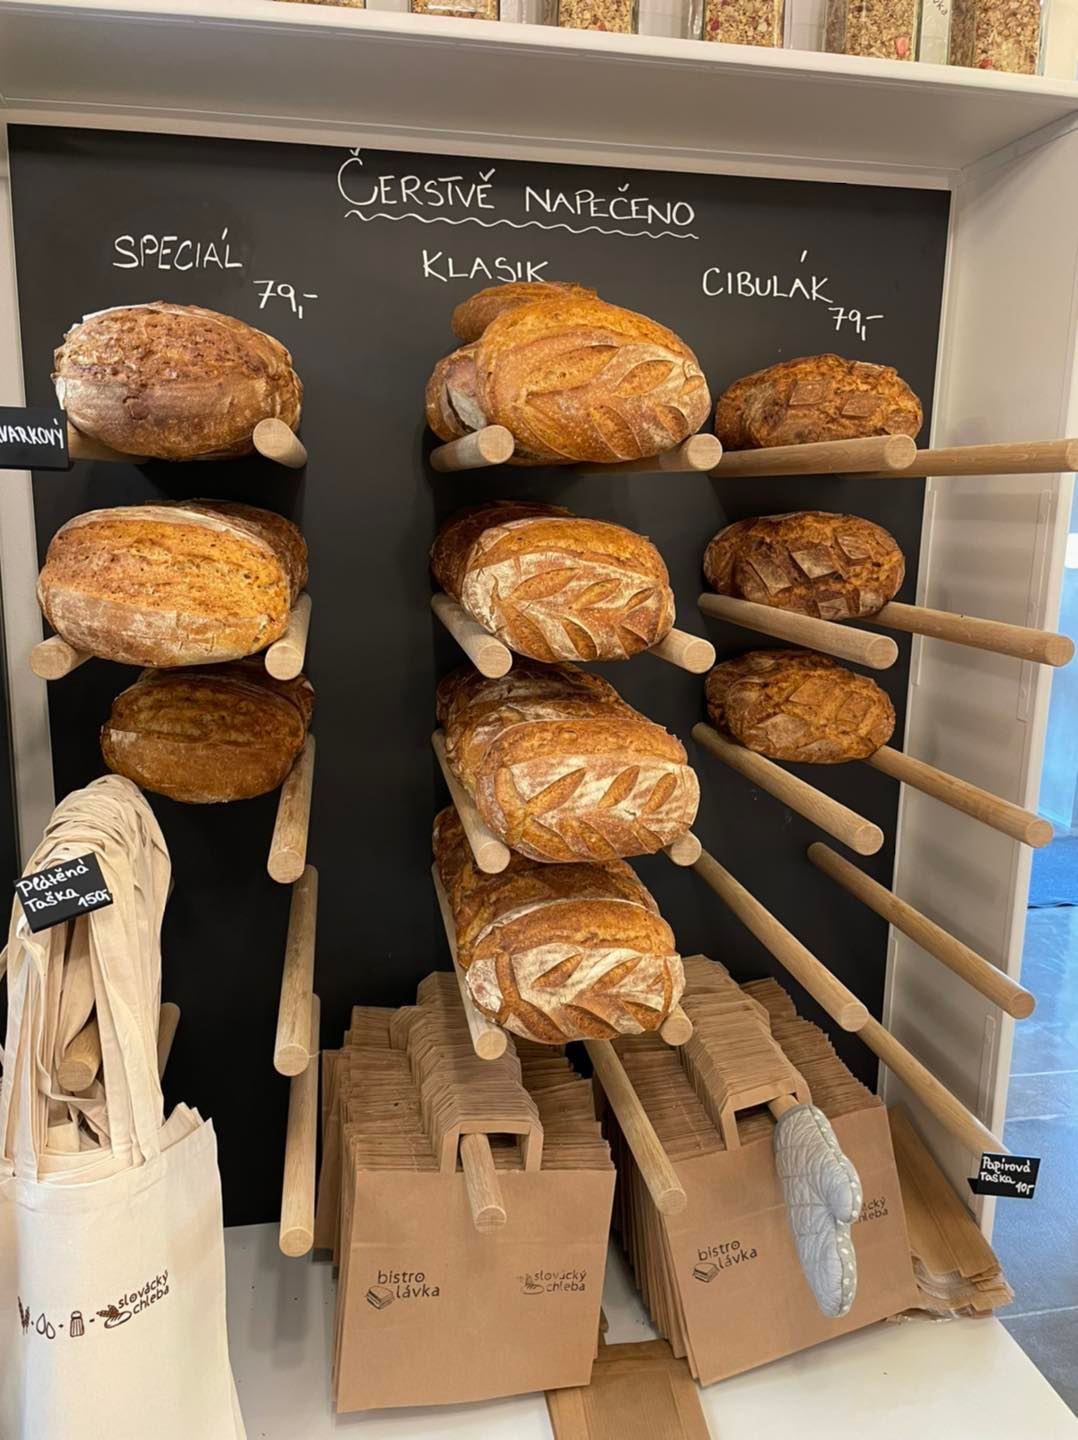 NOVINKA v Uherském Hradišti! Zásobte se nejlepším kváskovým Slováckým chlebem!